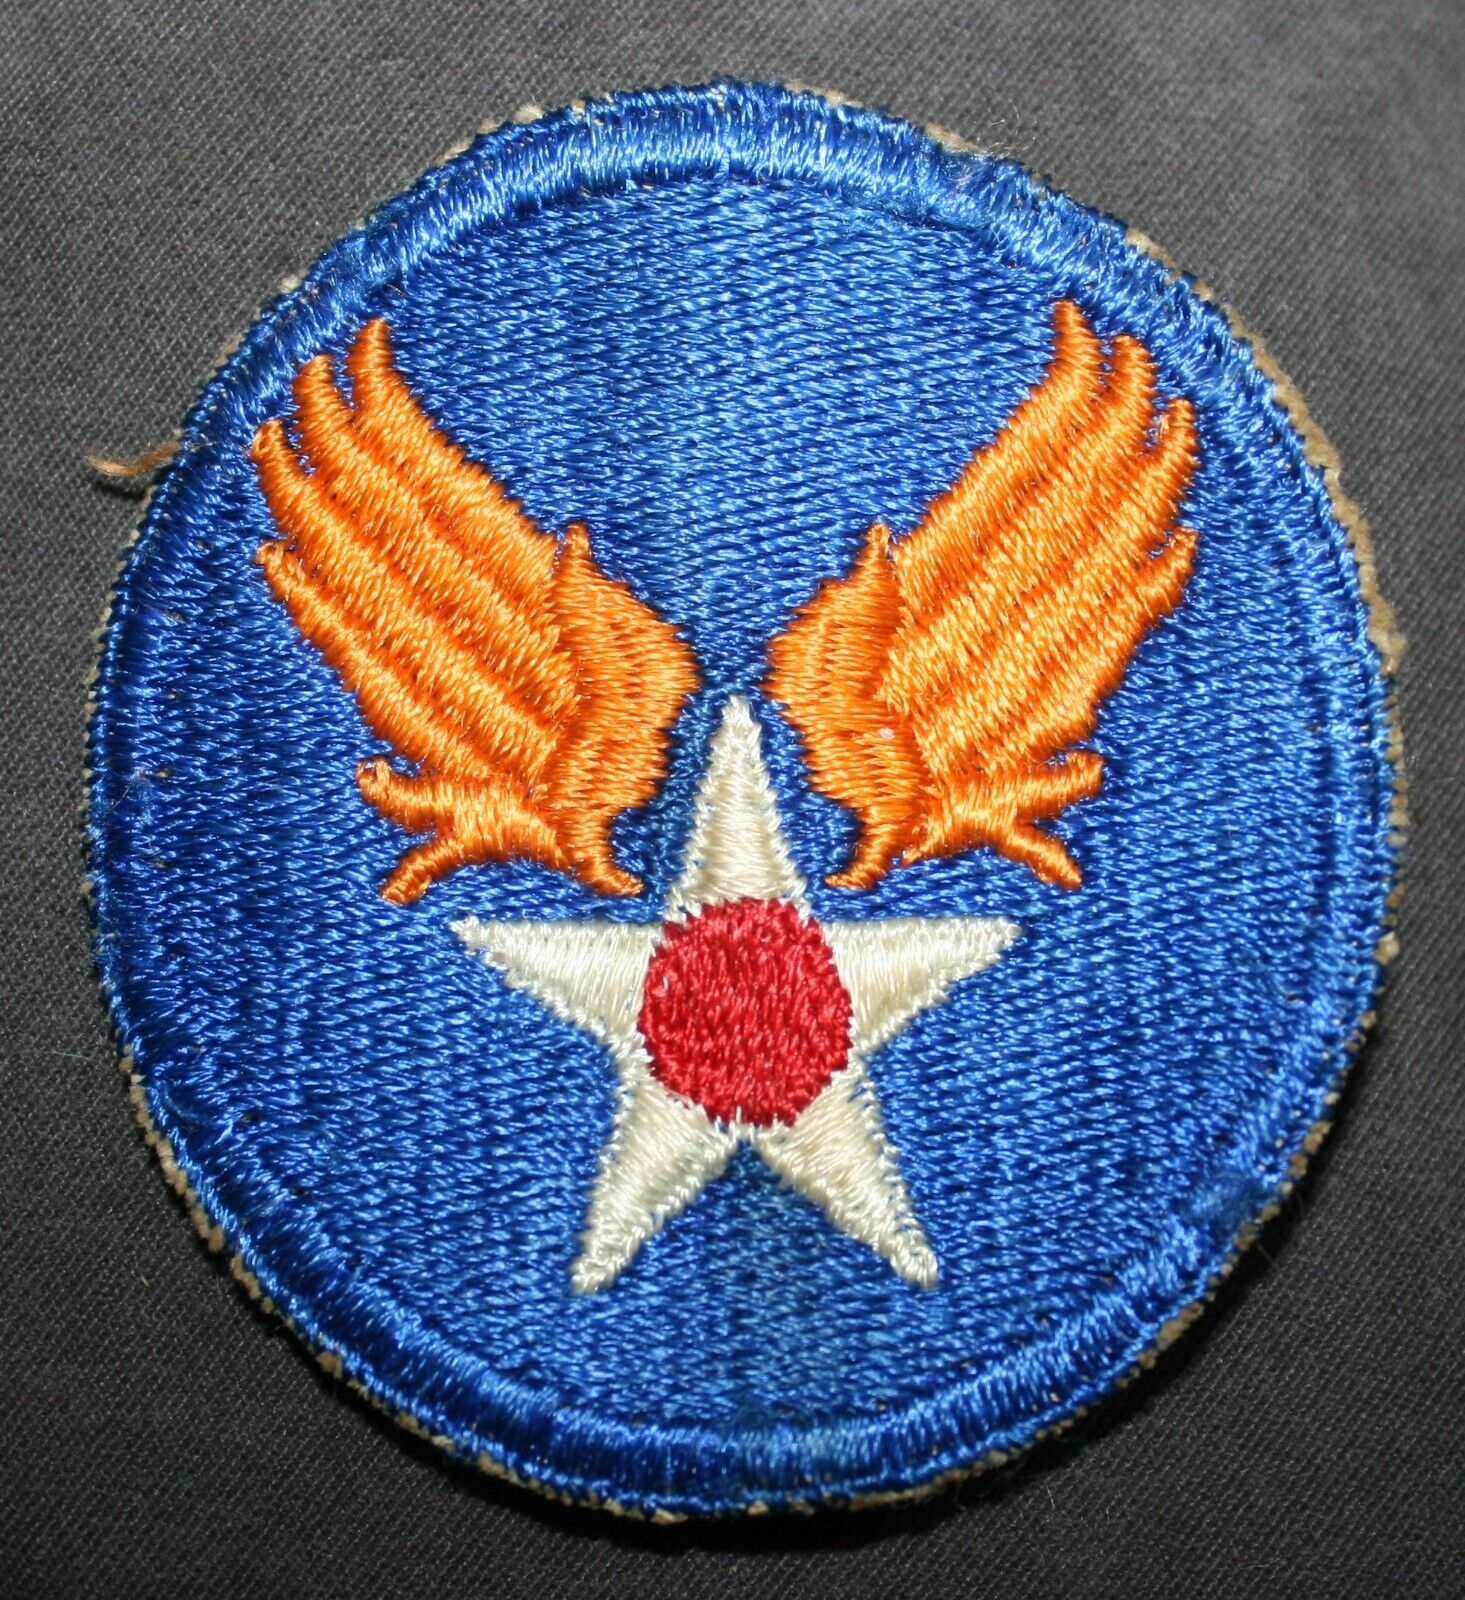 ORIGINAL WW2 WWII U.S. ARMY AIR FORCE PATCH USAAF U.S. ARMY AIR CORPS